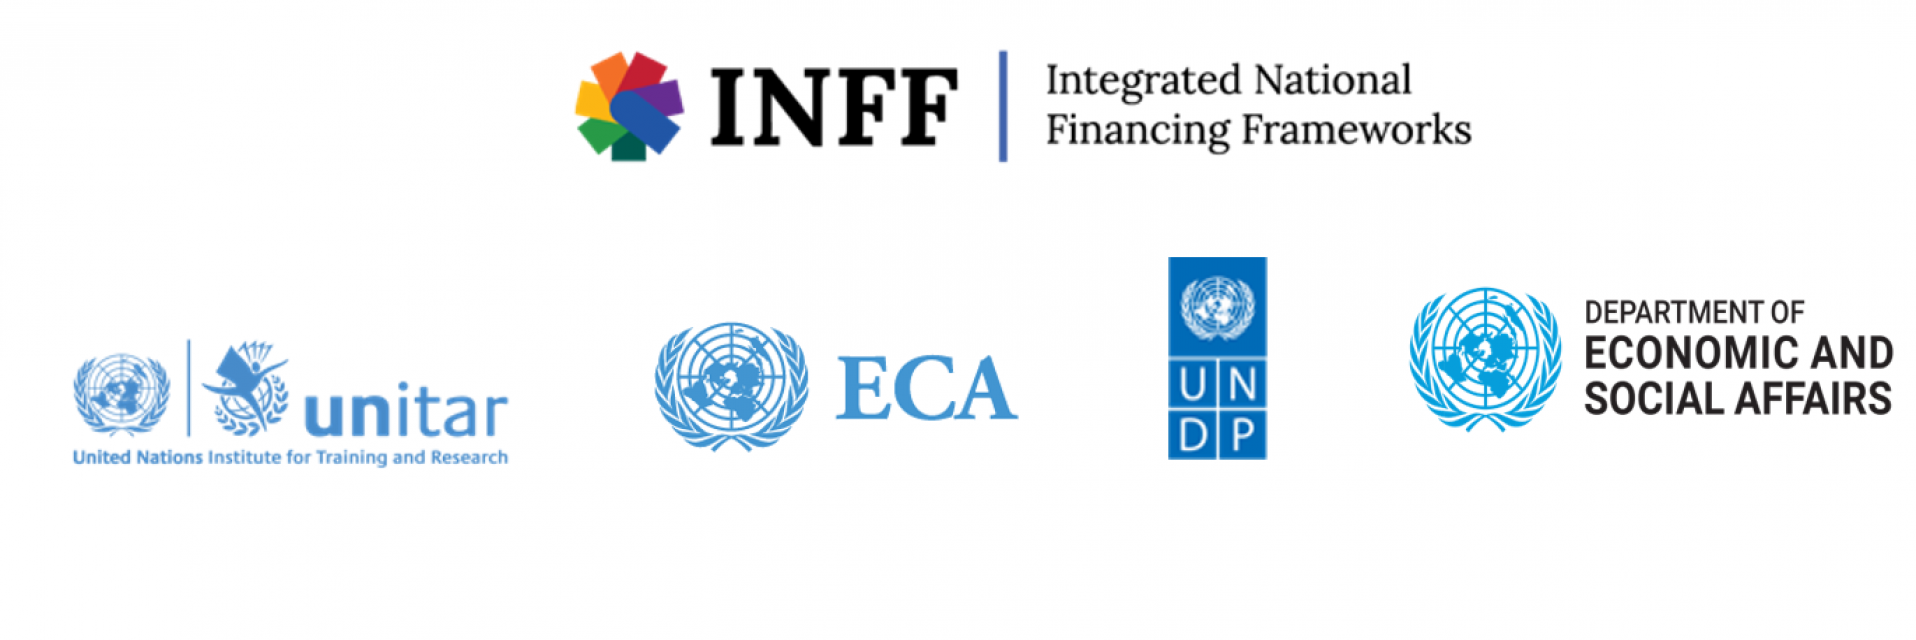 Atelier sur les cadres de financement nationaux intégrés en Afrique 